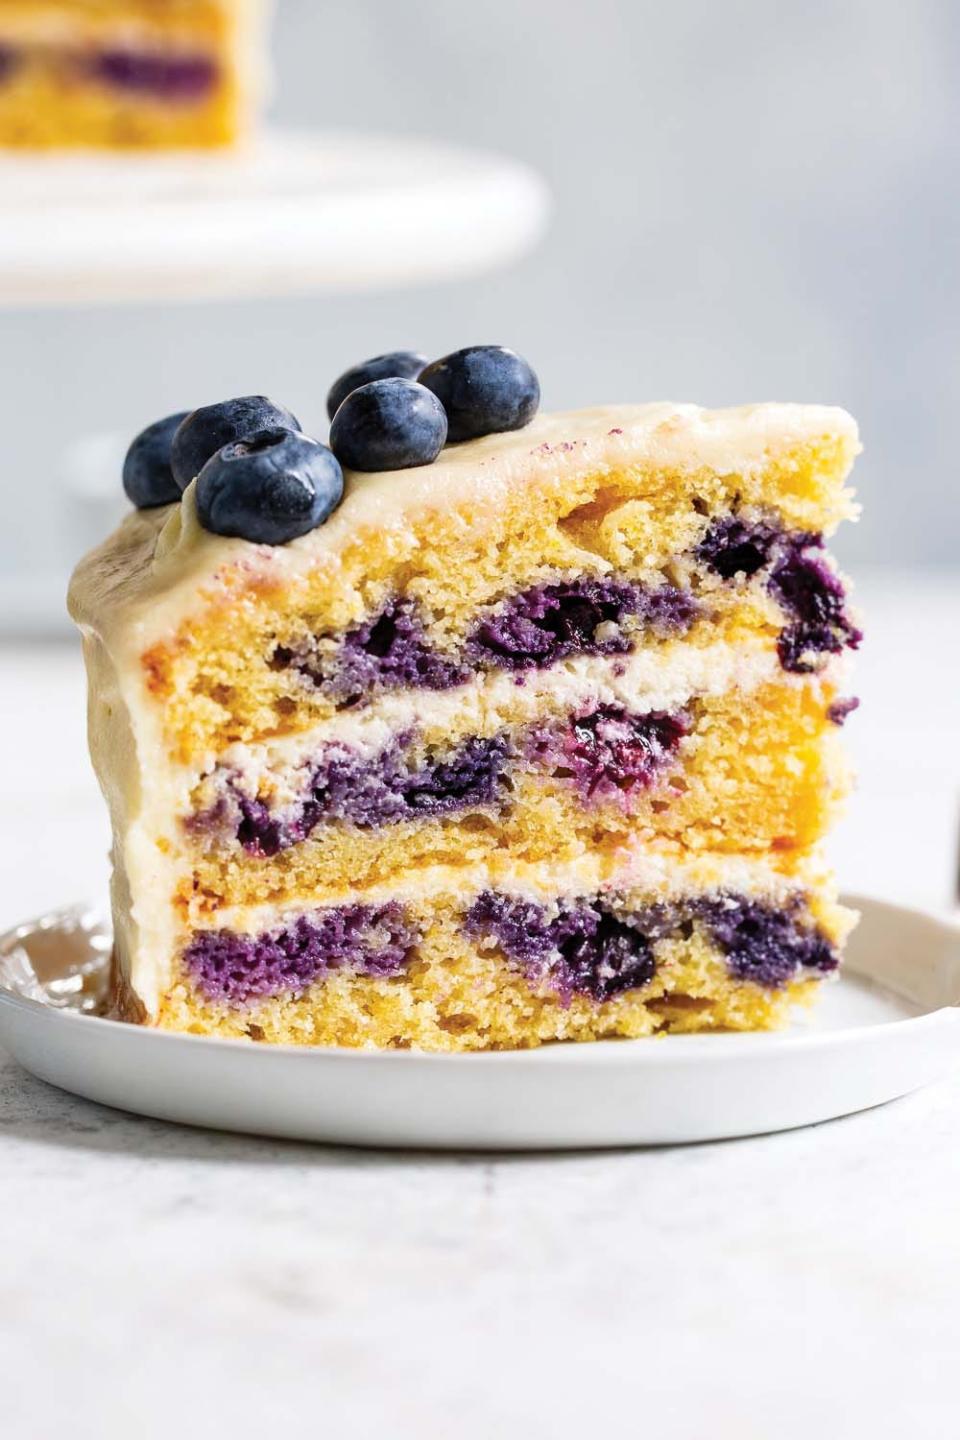 Michele Rosen’s lemon blueberry layer cake